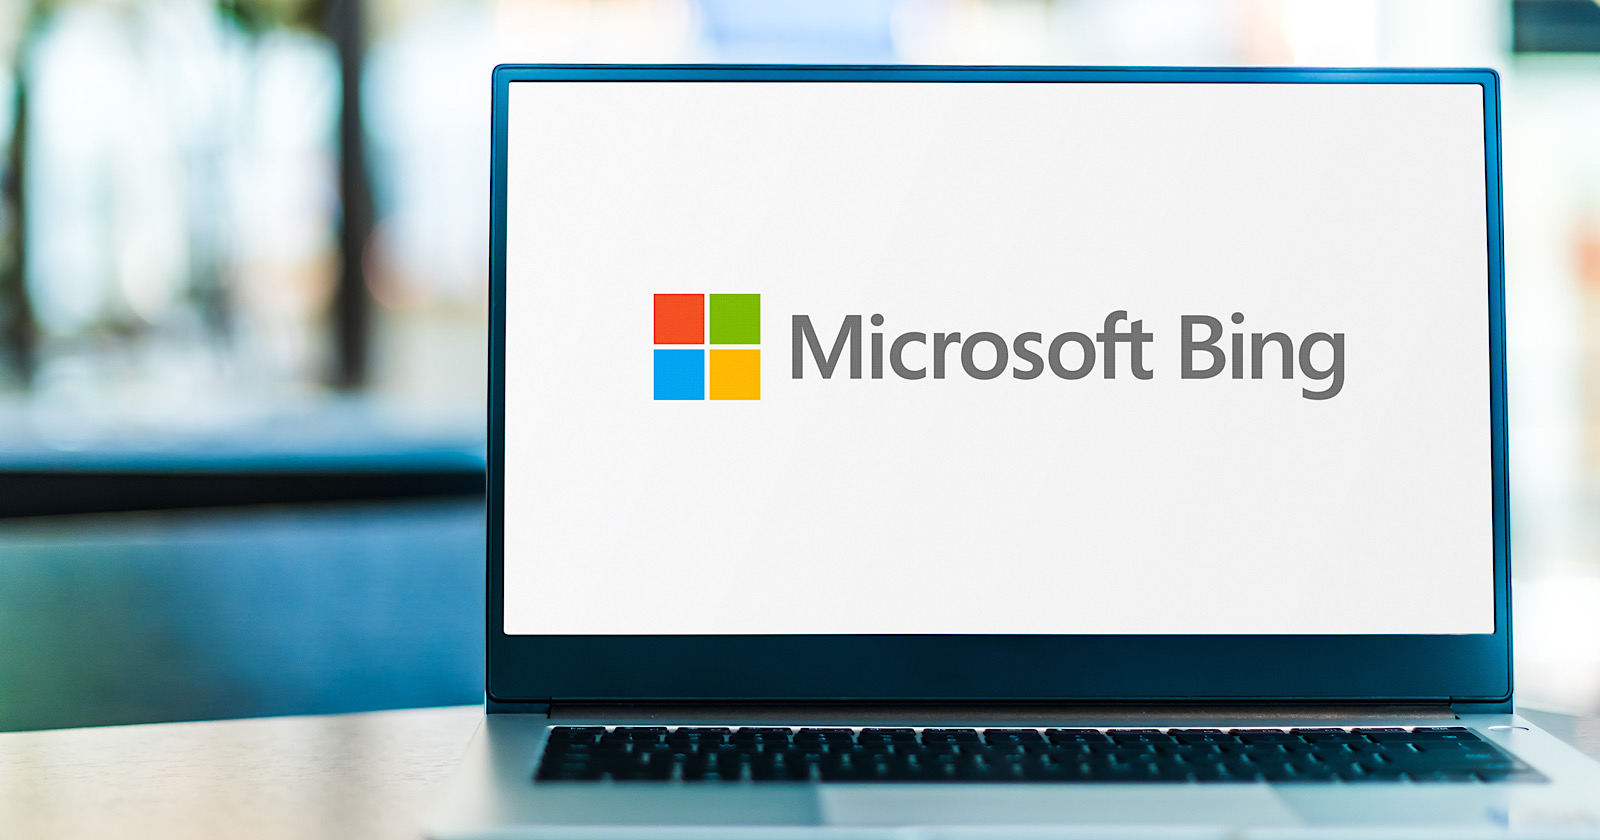 Microsoft zapowiedział wydarzenie zaplanowane na 7 lutego, podczas którego spodziewane są wiadomości o integracji ChatGPT z Bingiem